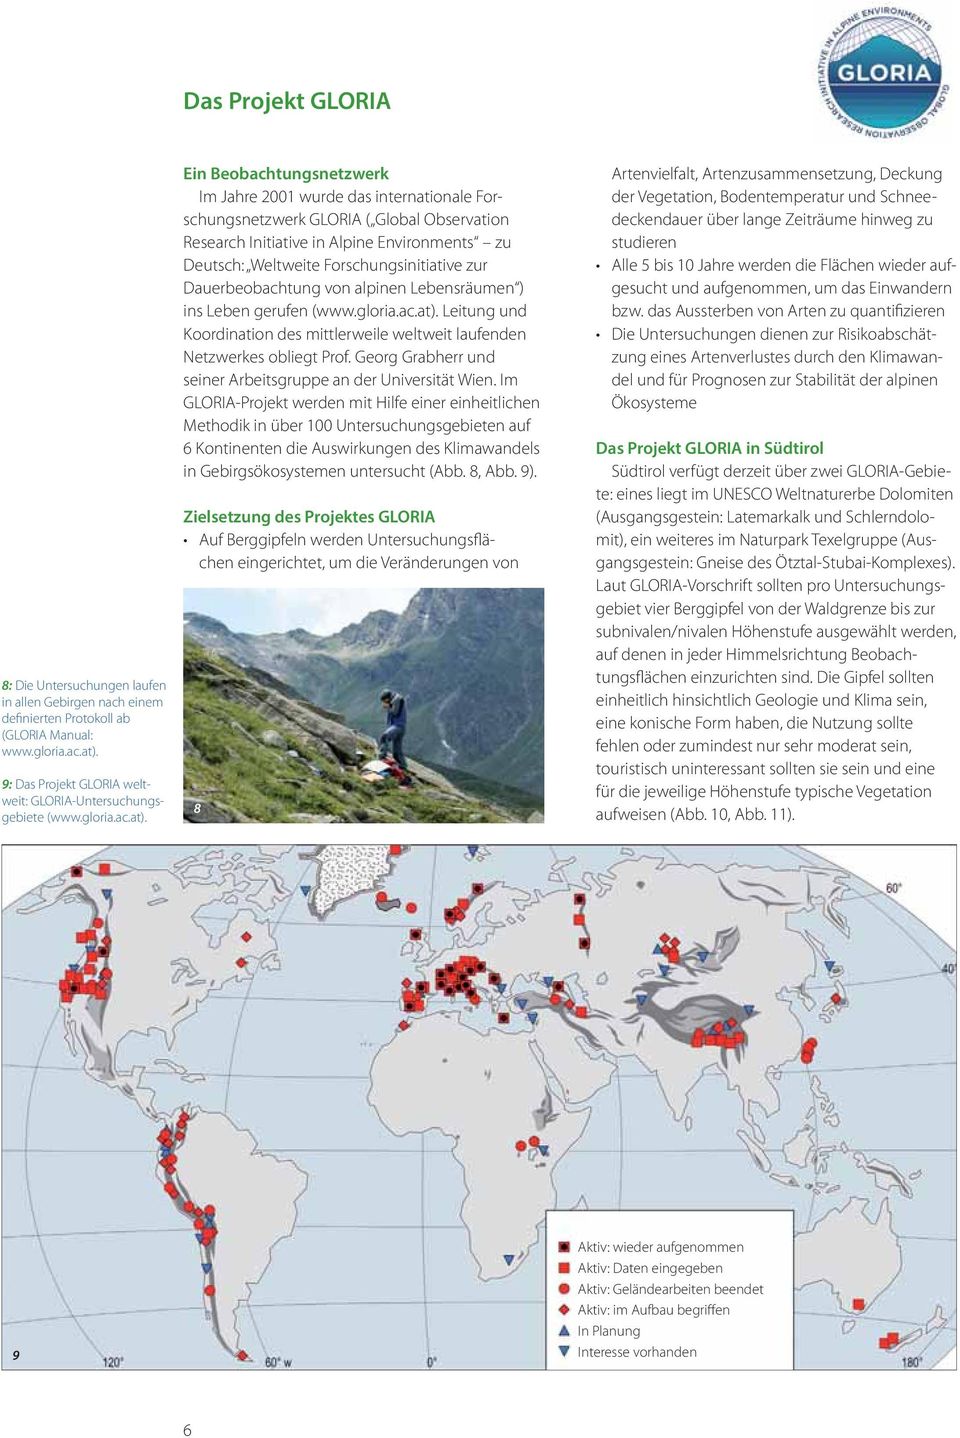 Ein Beobachtungsnetzwerk Im Jahre 2001 wurde das internationale Forschungsnetzwerk GLORIA ( Global Observation Research Initiative in Alpine Environments zu Deutsch: Weltweite Forschungsinitiative